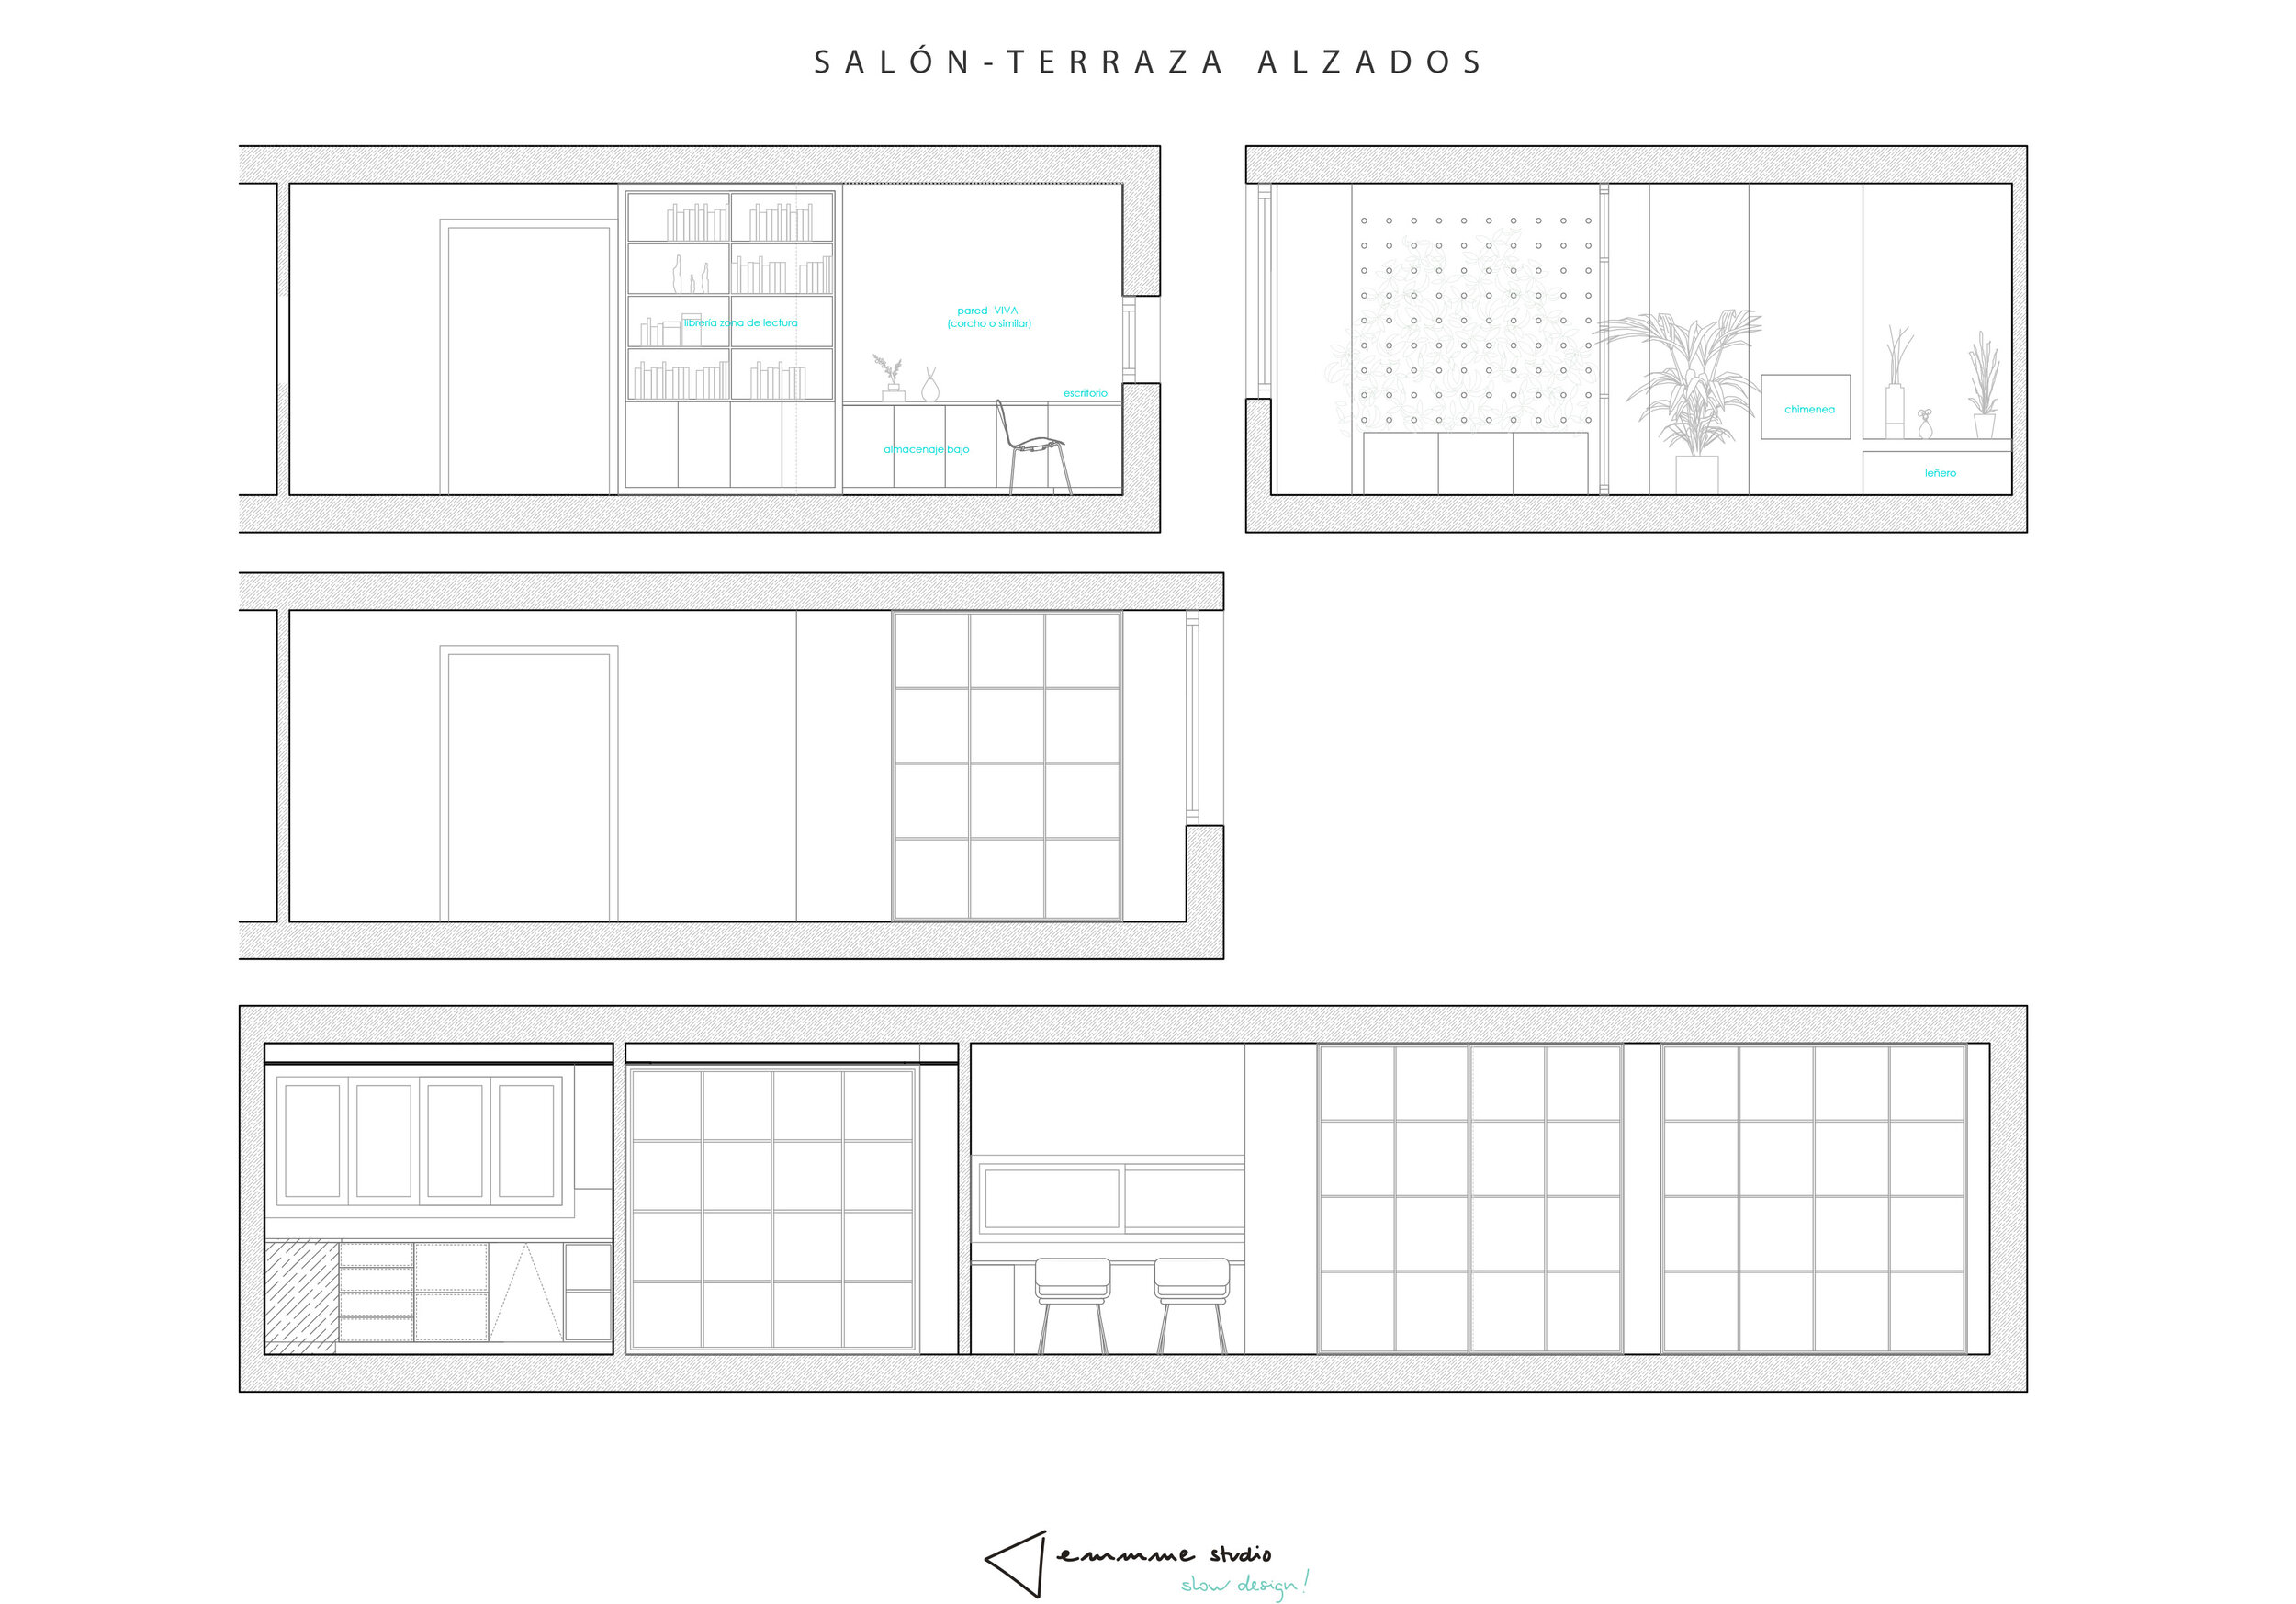 emmme studio diseño interior reformas alzados terraza.jpg